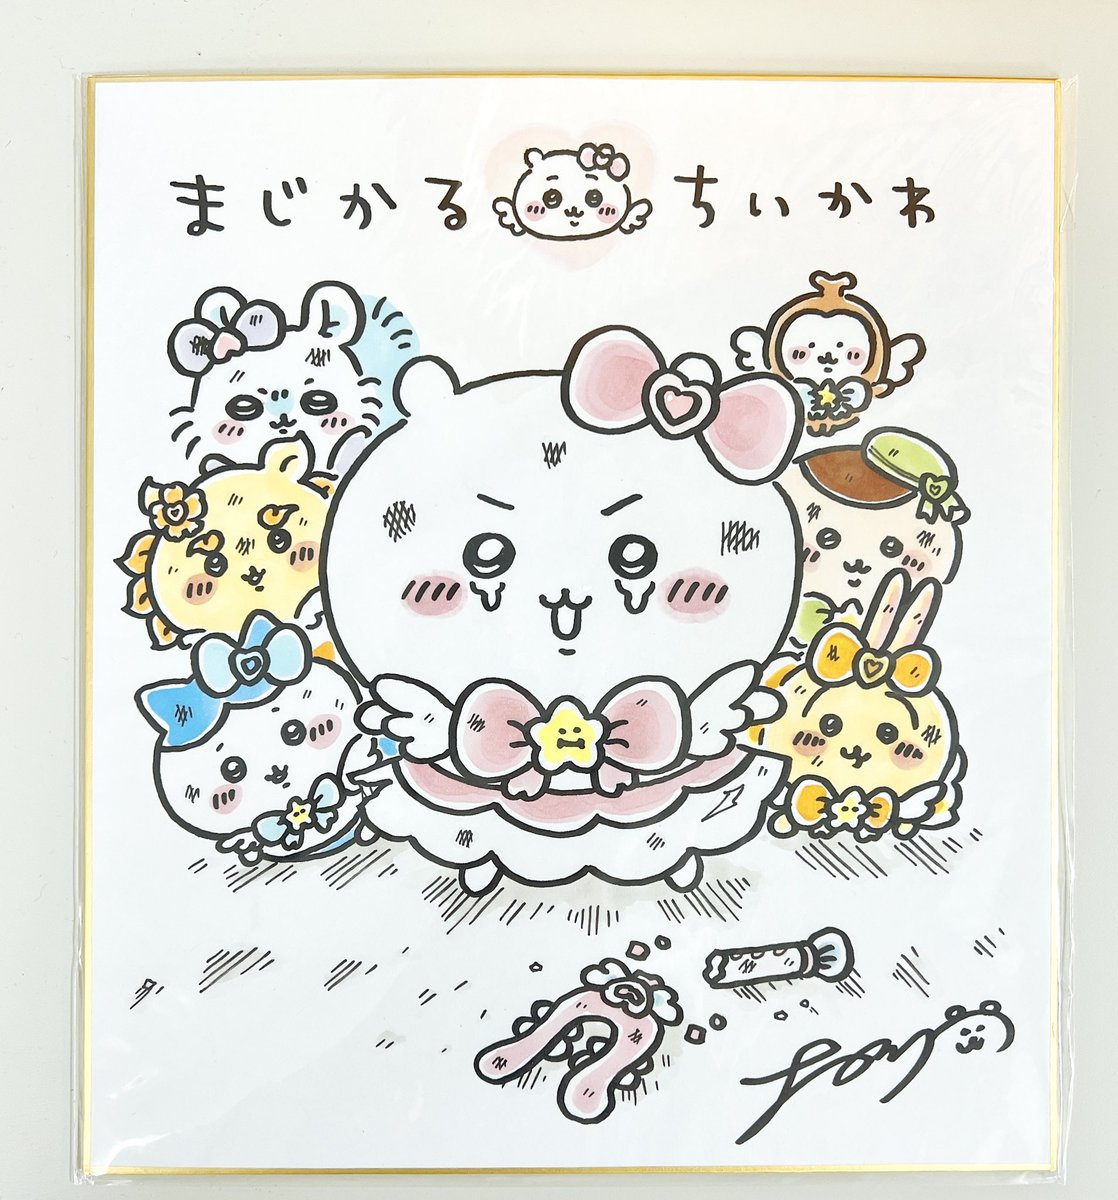 Hayate on Twitter: "RT @chiikawa_kouhou: 会場にてナガノさん直筆のイラスト色紙も展示しています🎨